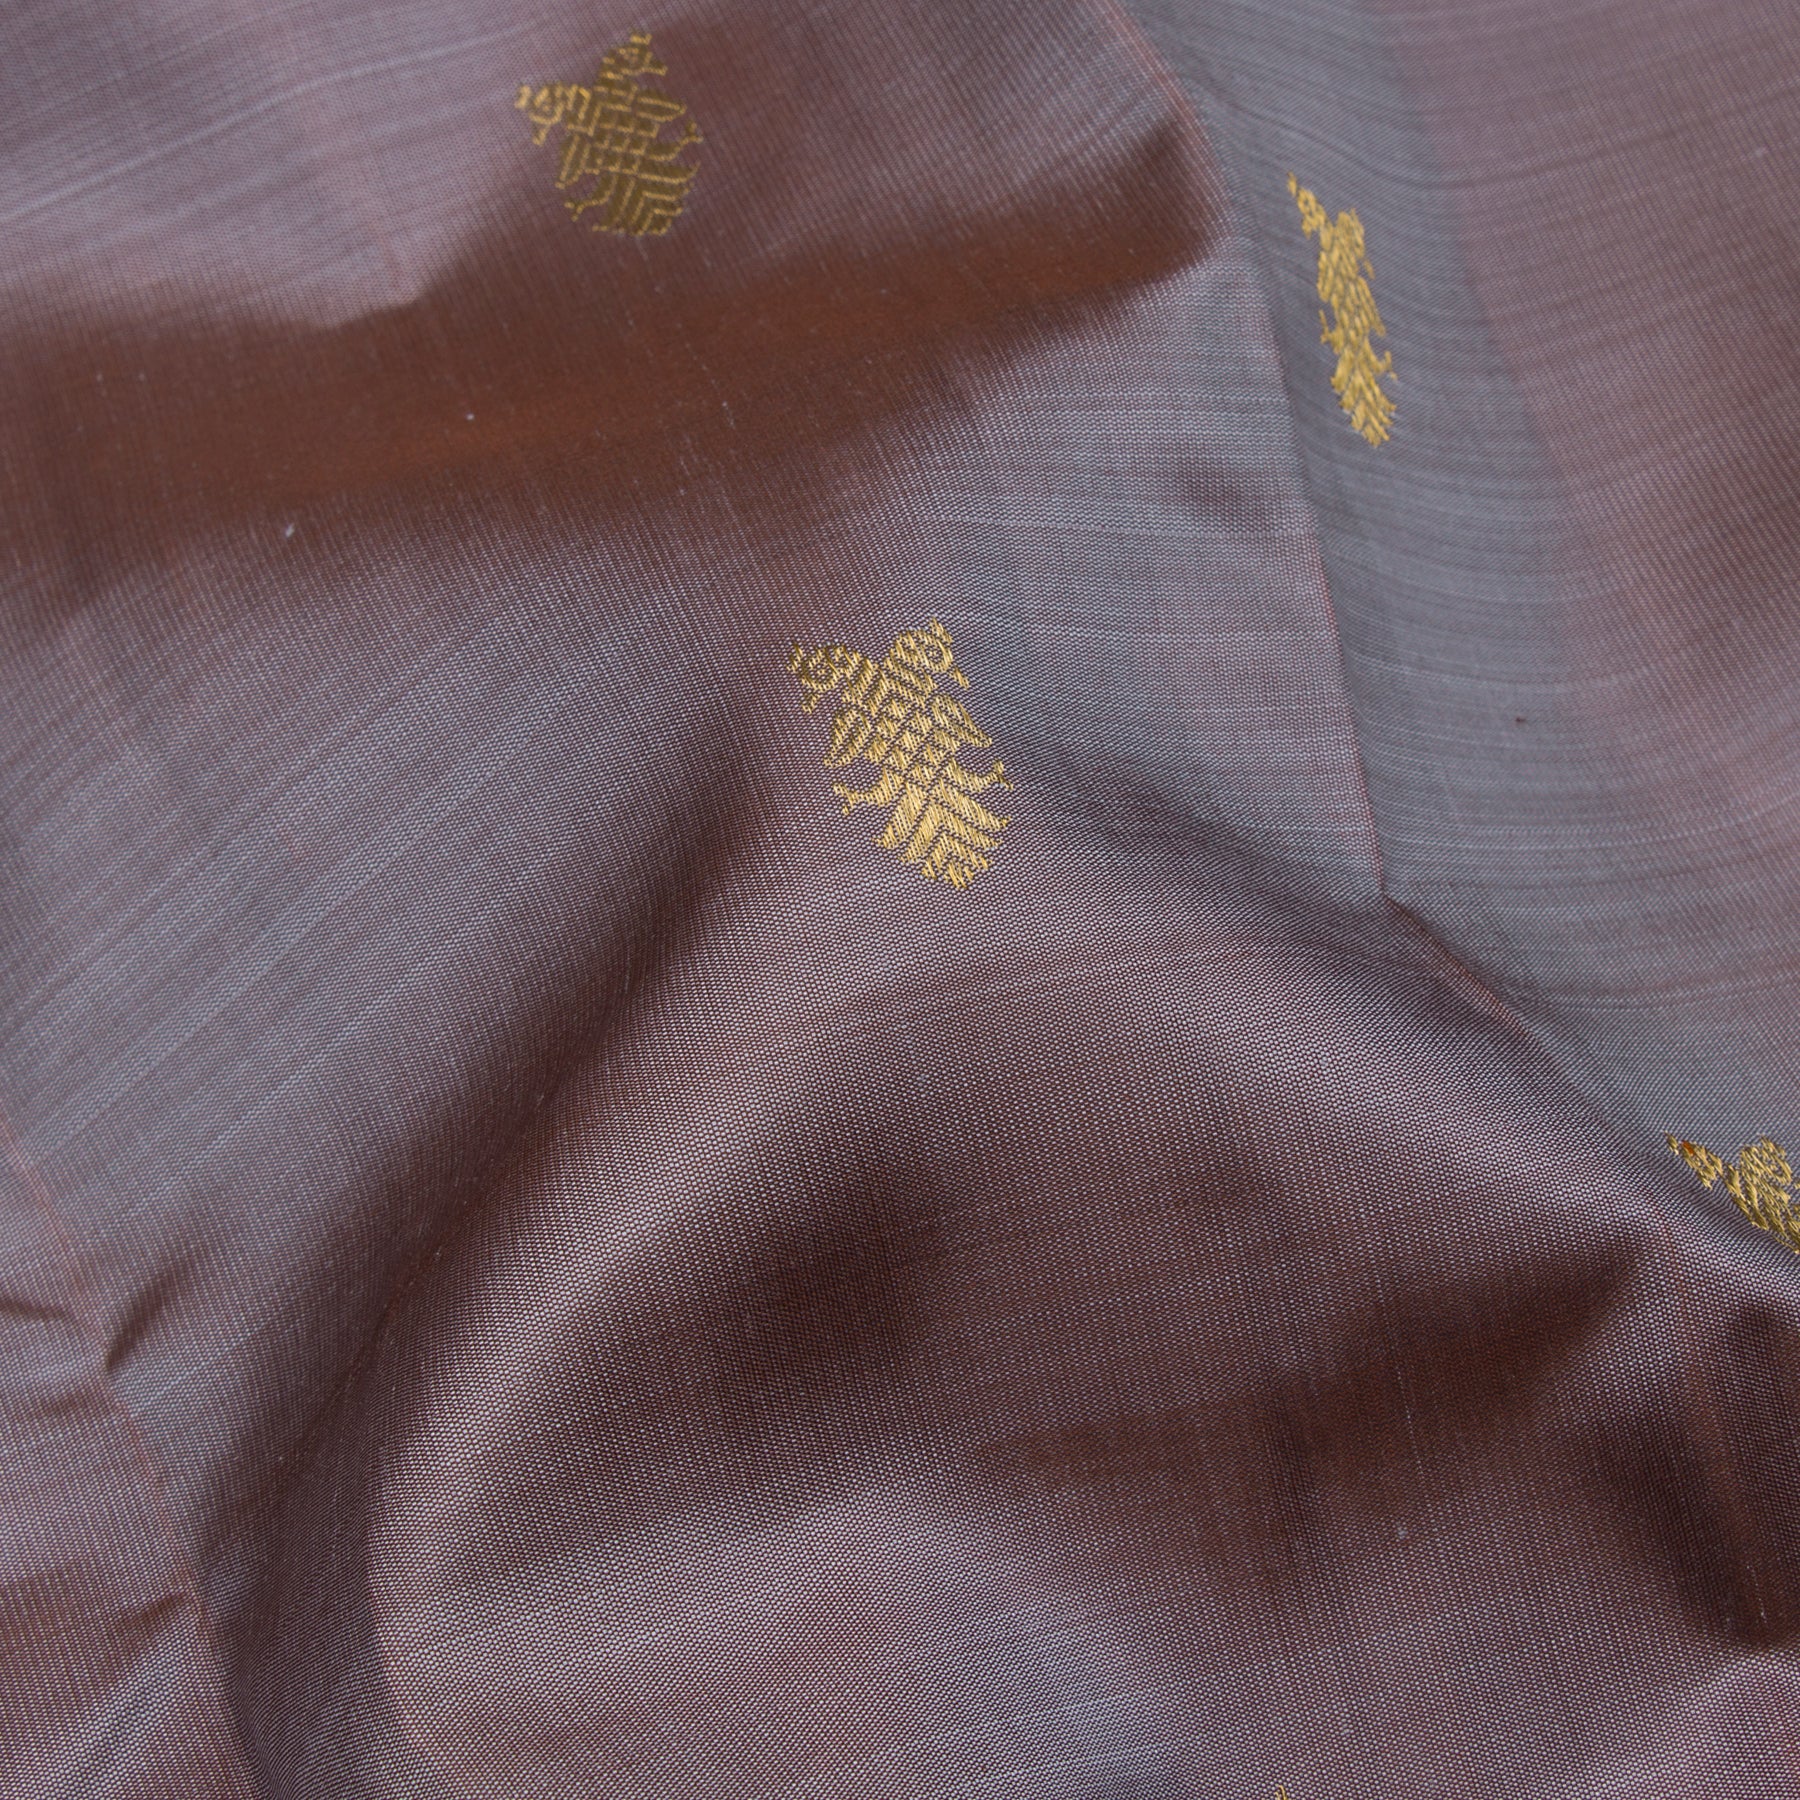 Kanakavalli Kanjivaram Silk Sari 23-595-HS001-12771 - Fabric View